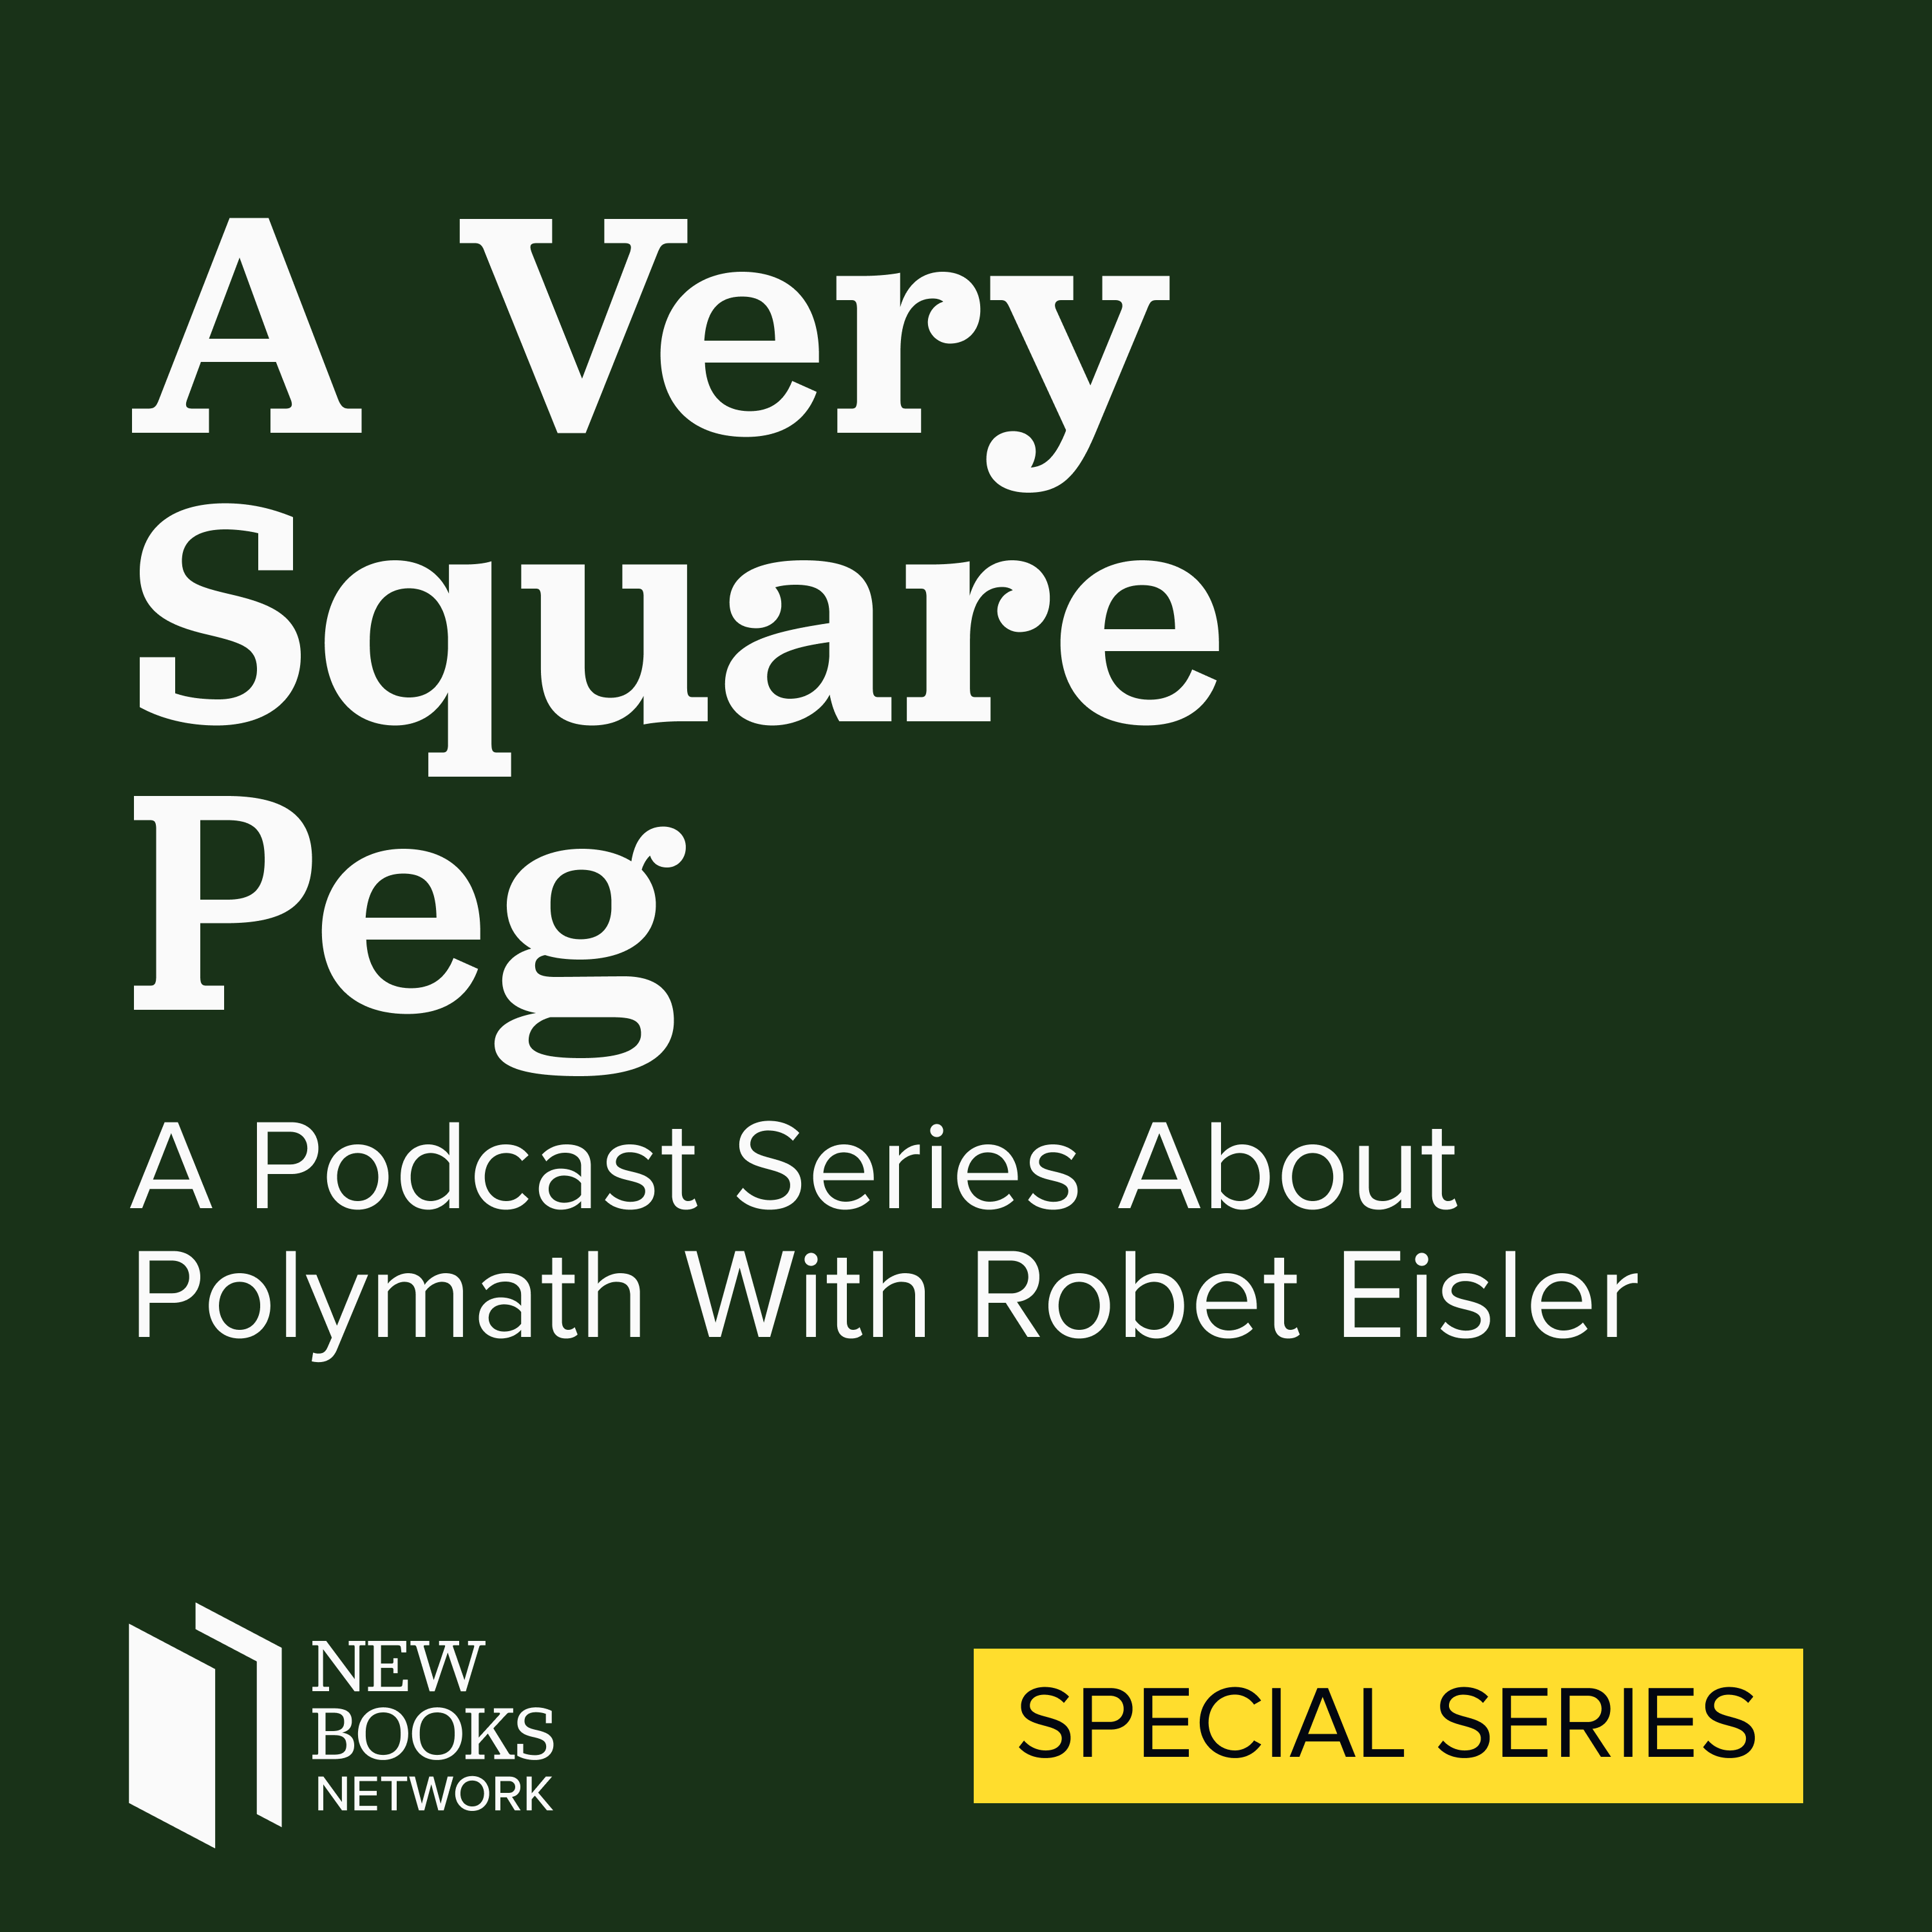 A Podcast Series about Polymath Robert Eisler